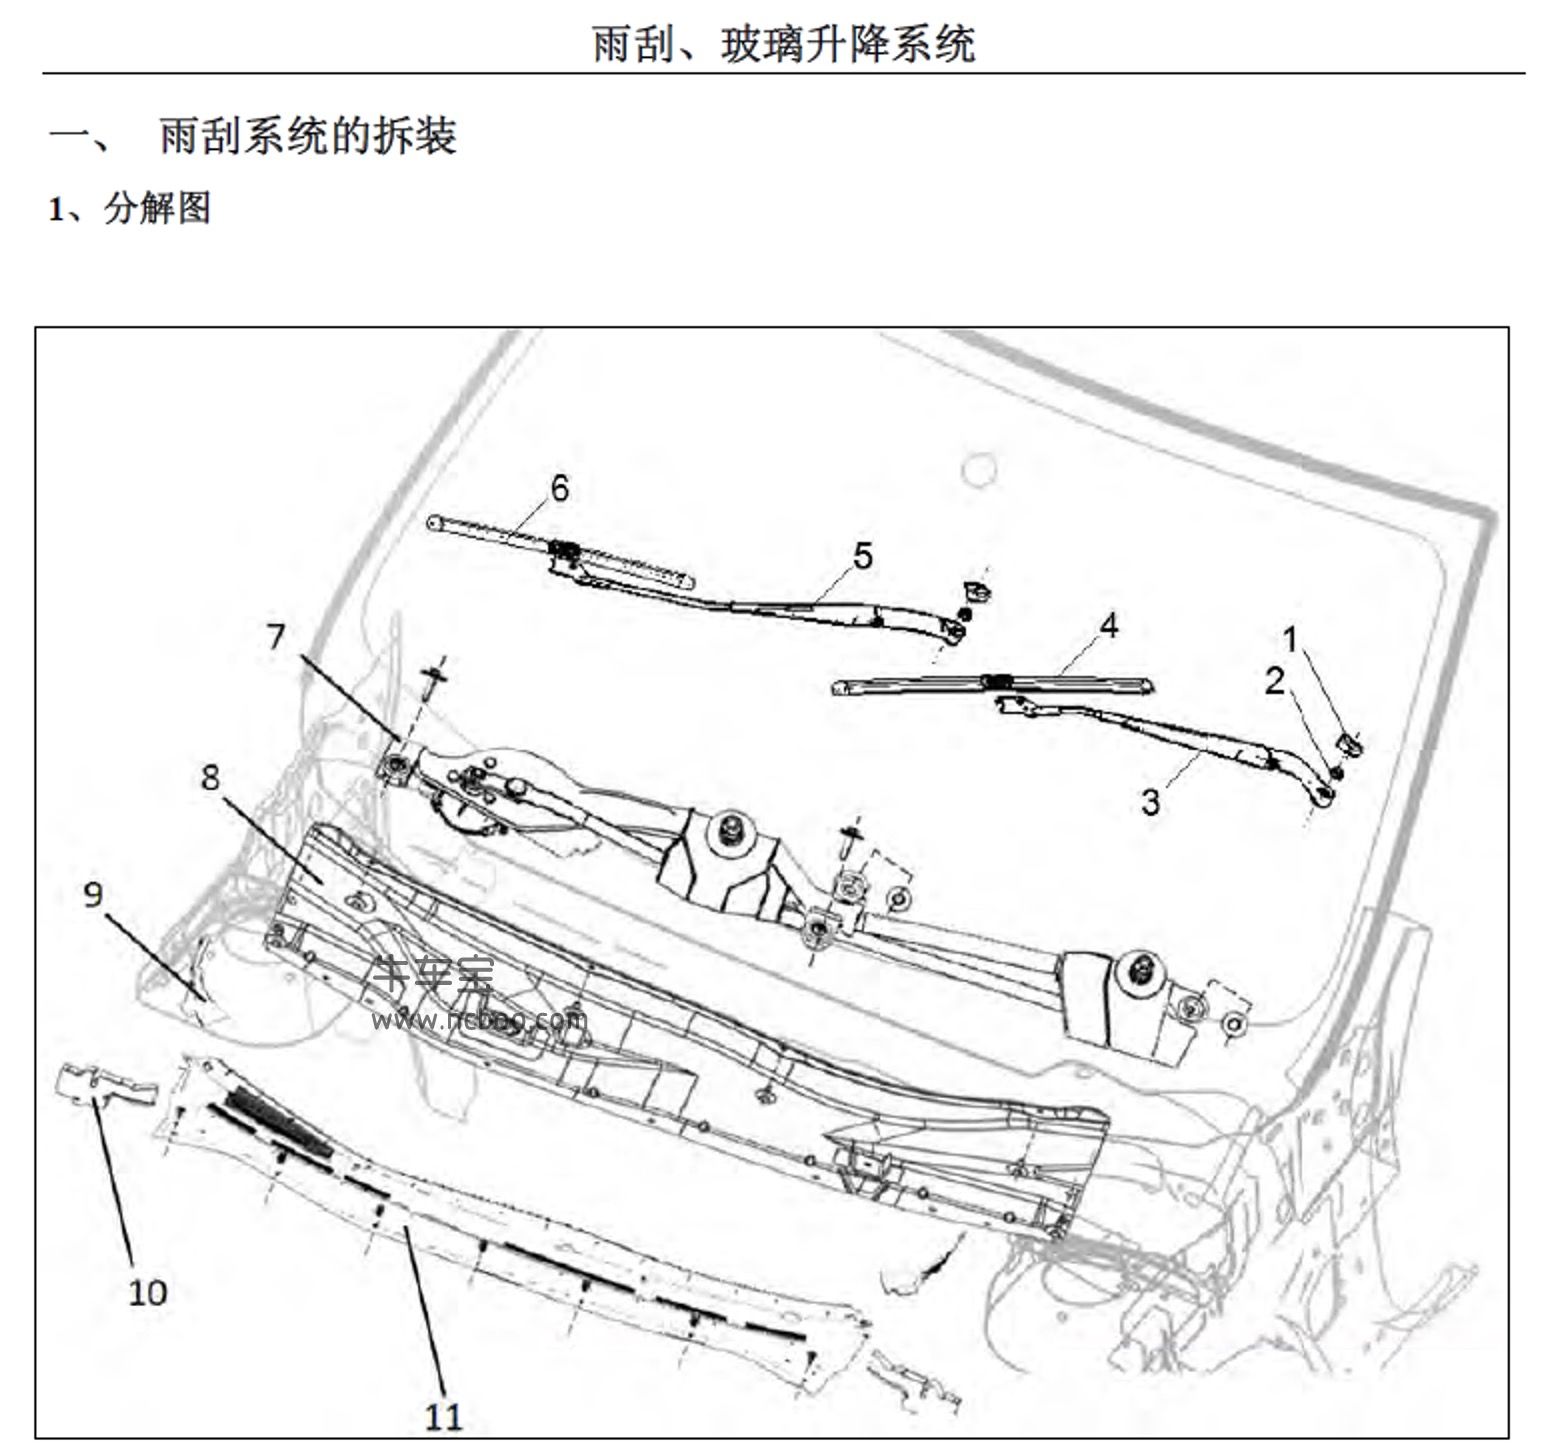 2018-2019款东风风行景逸S50EVC纯电原厂维修手册和电路图